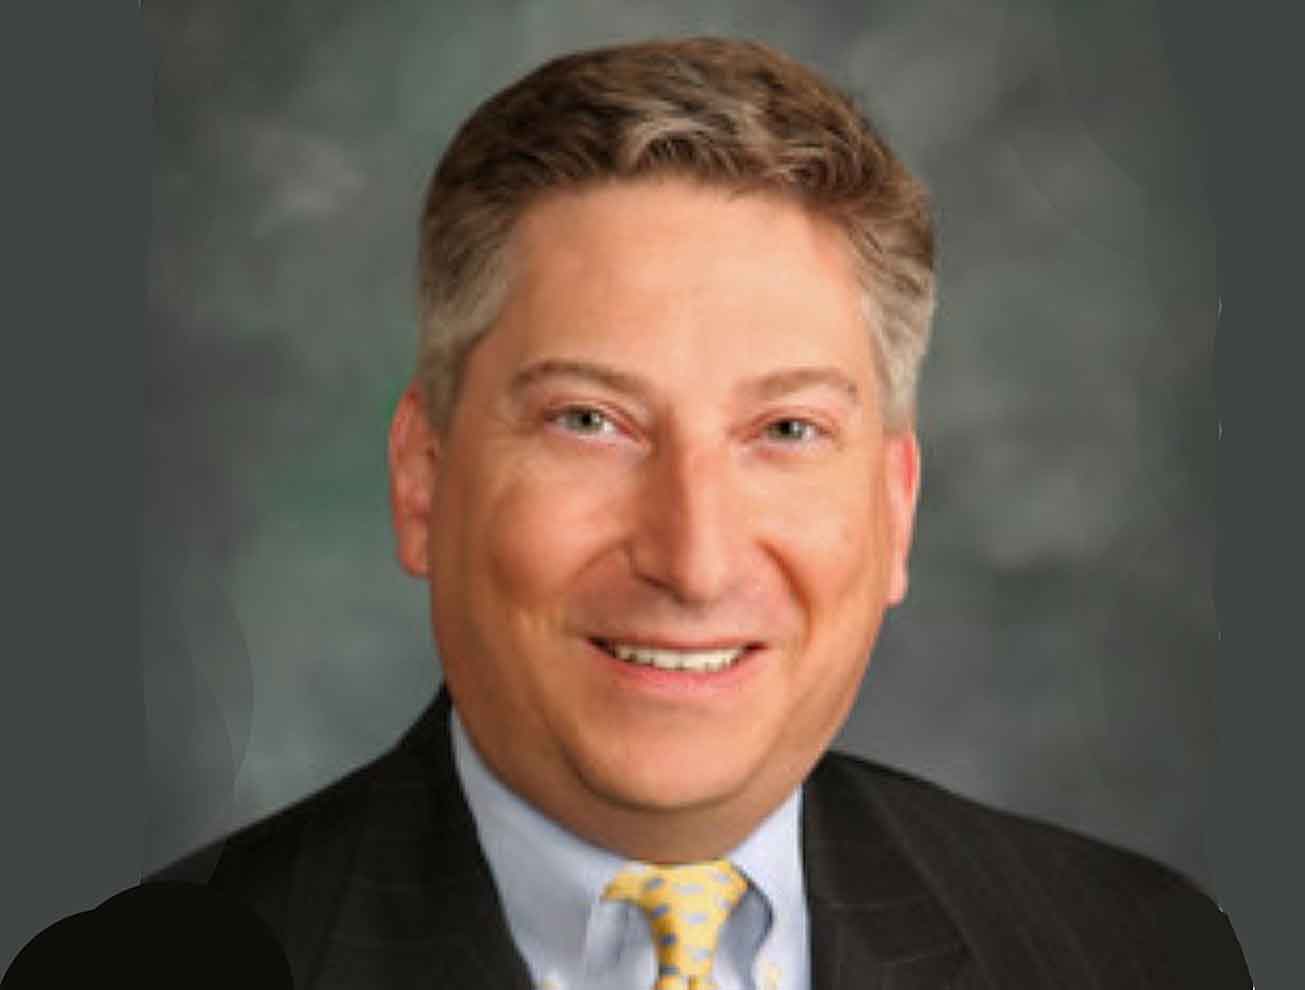 Christian Klein, ARSA Executive Vice President